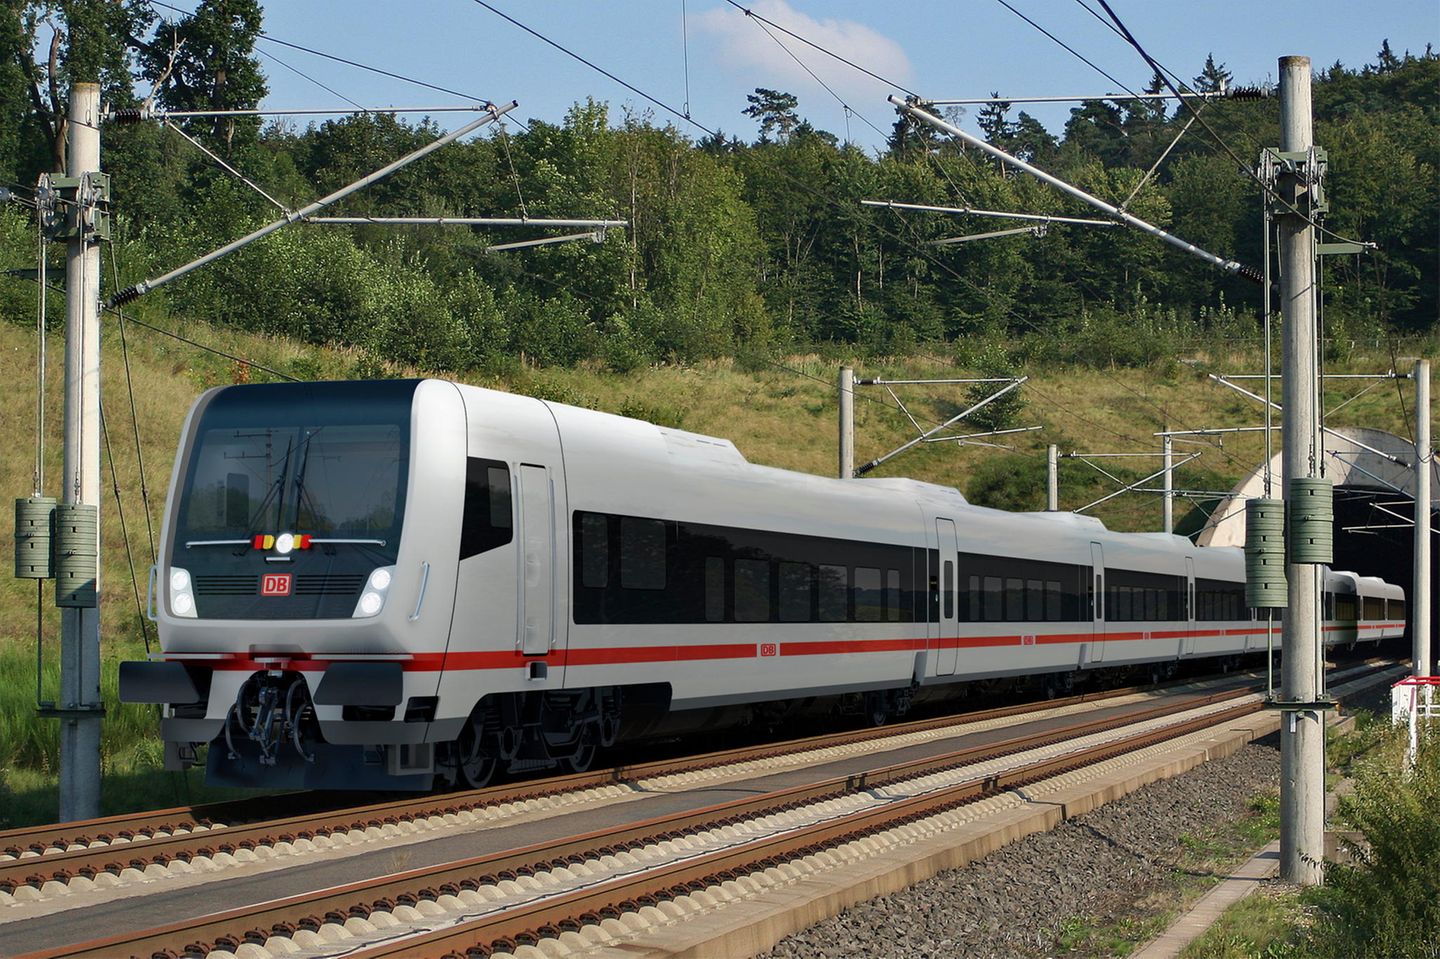 Deutsche Bahn Stellt Neuen Fernzug Vor Auf Dem Weg Zum Wow Effekt Stern De